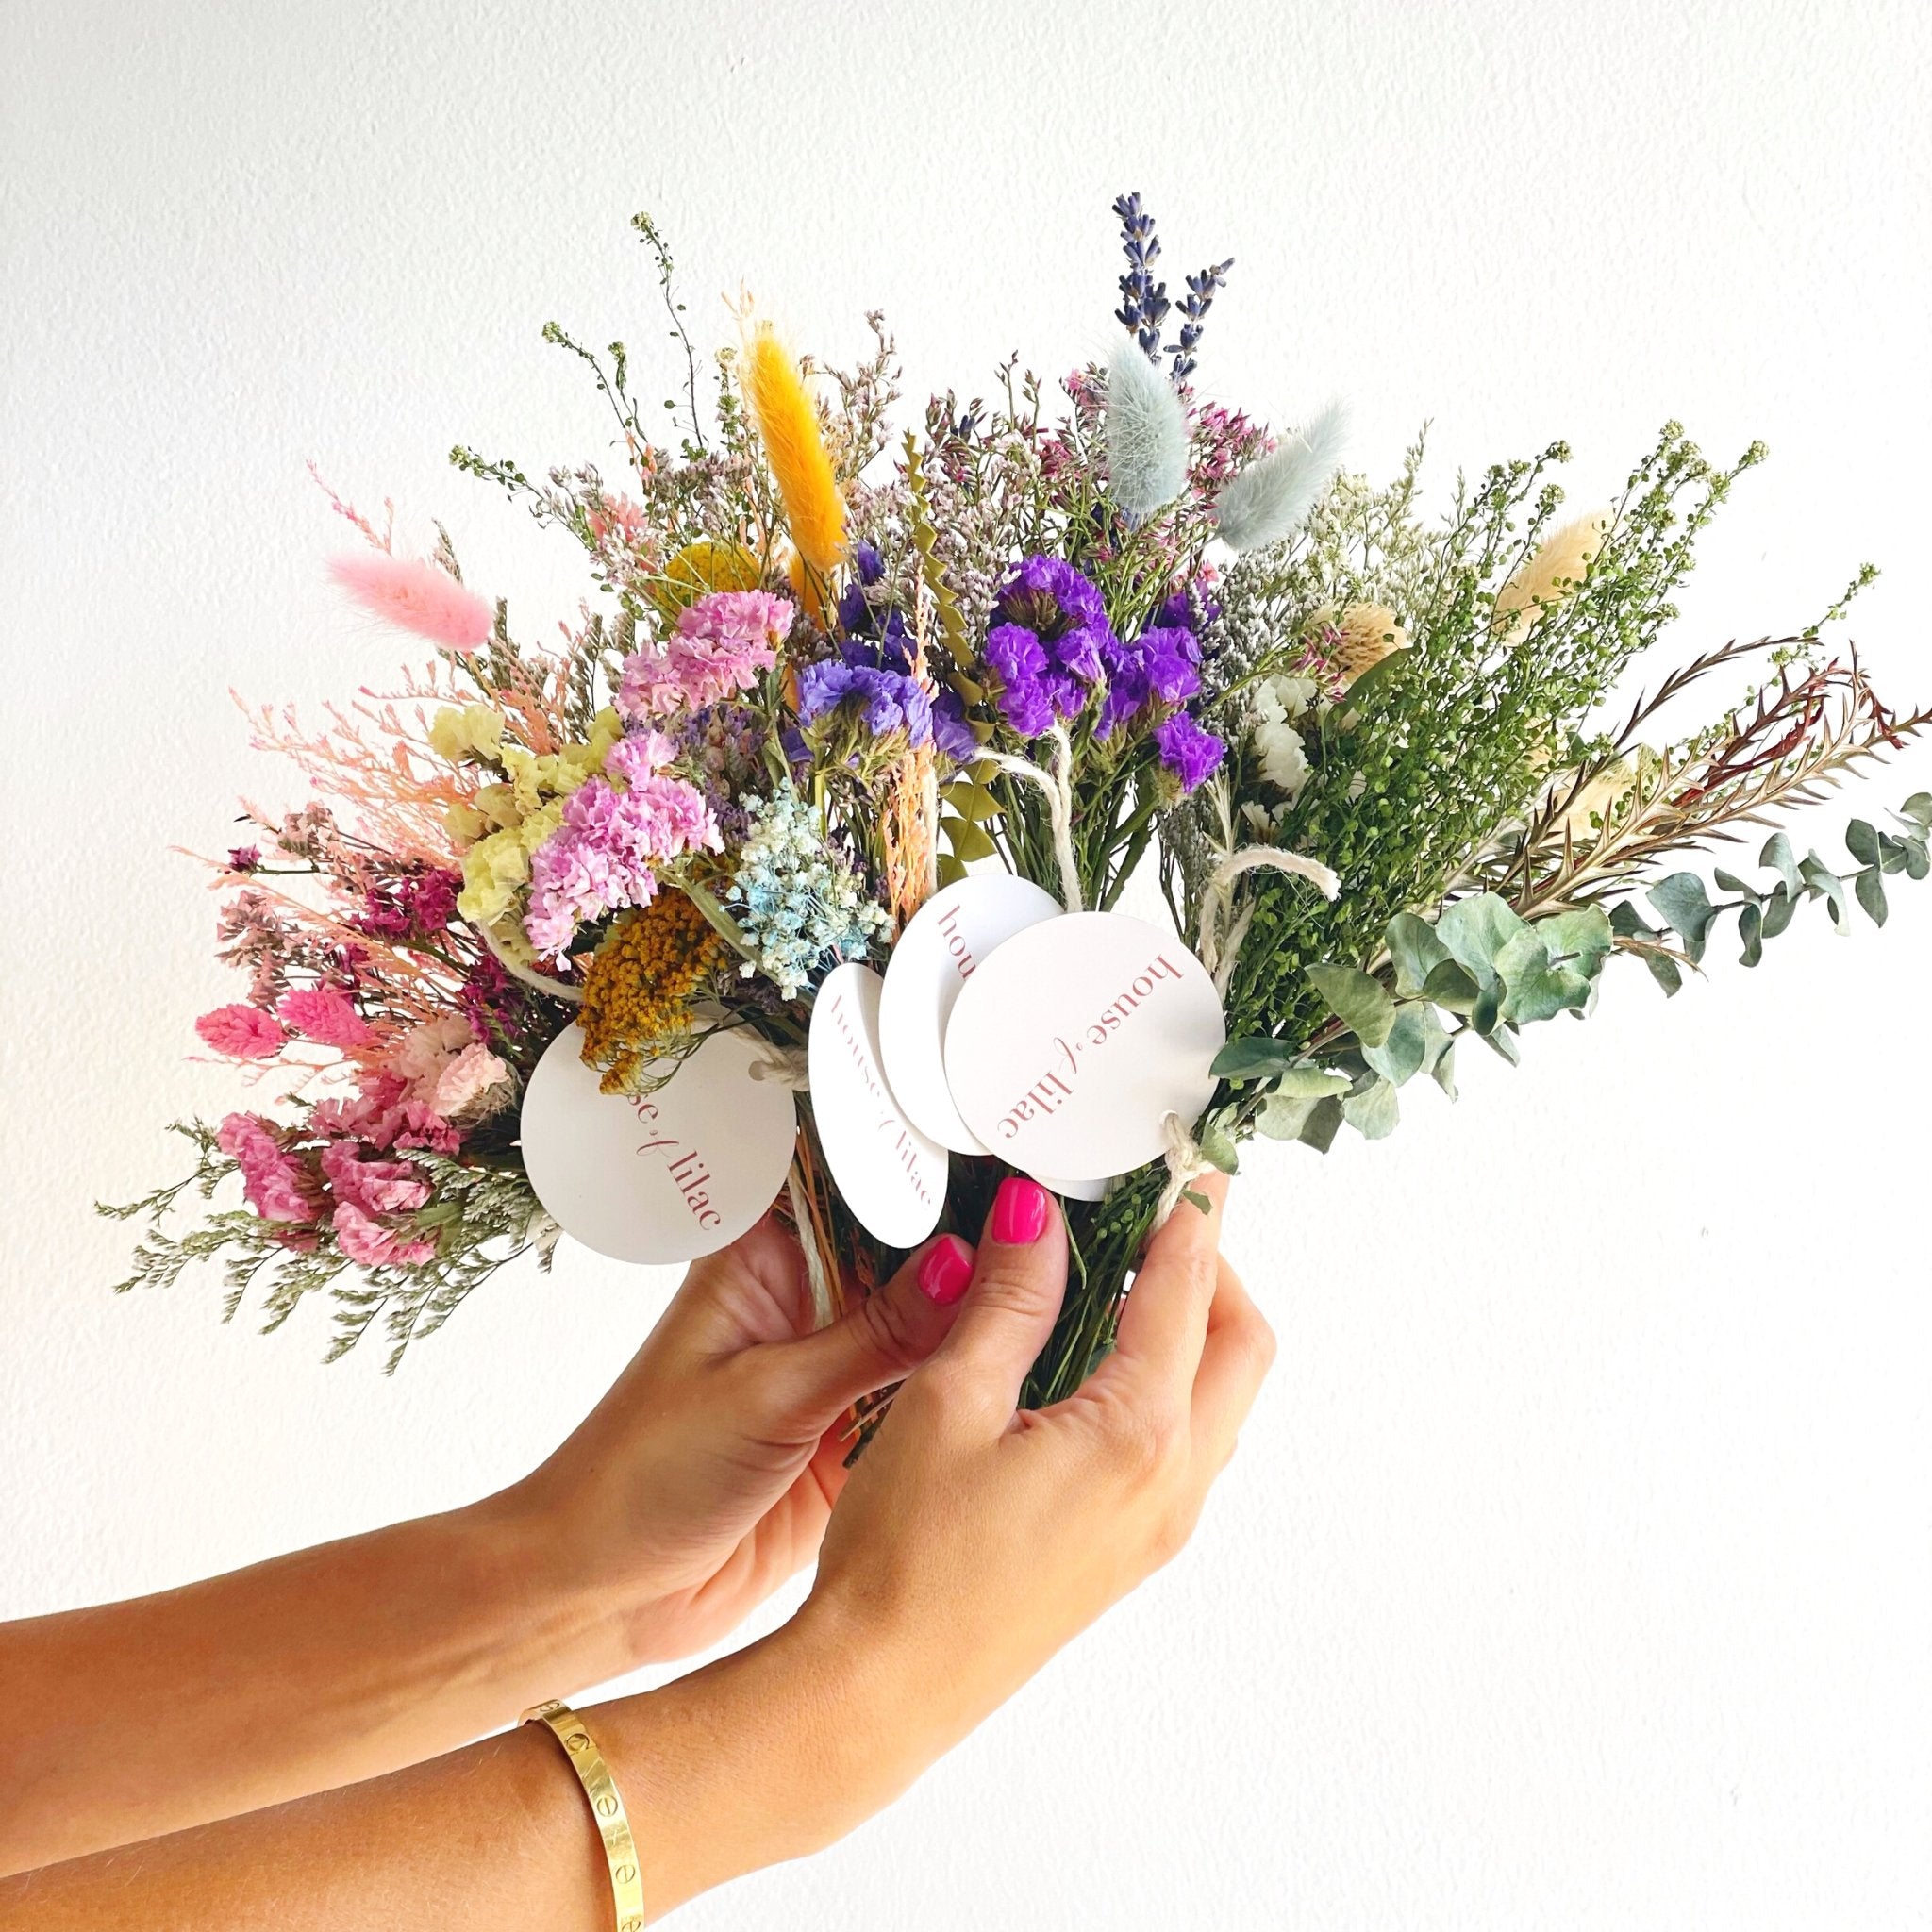 Lilac Dried Flower Bunch Dried Flowers, Floral Arrangements Florist, DIY,  Create Your Own Bouquet 